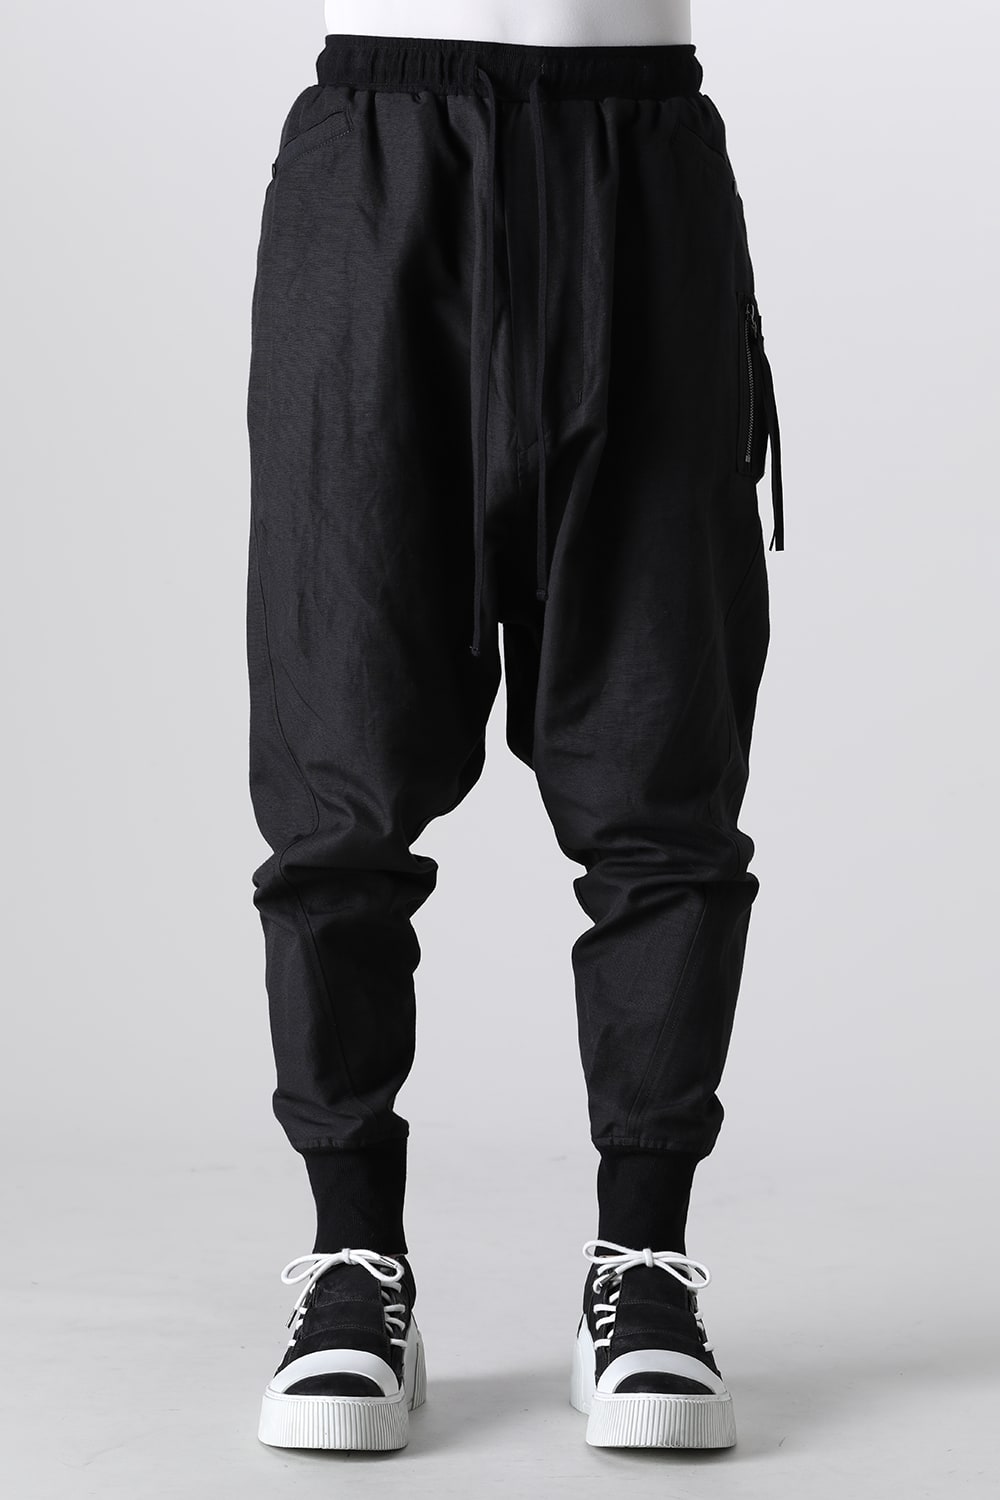 Nylon/Cotton Grosgrain Sarrouel Pants Black